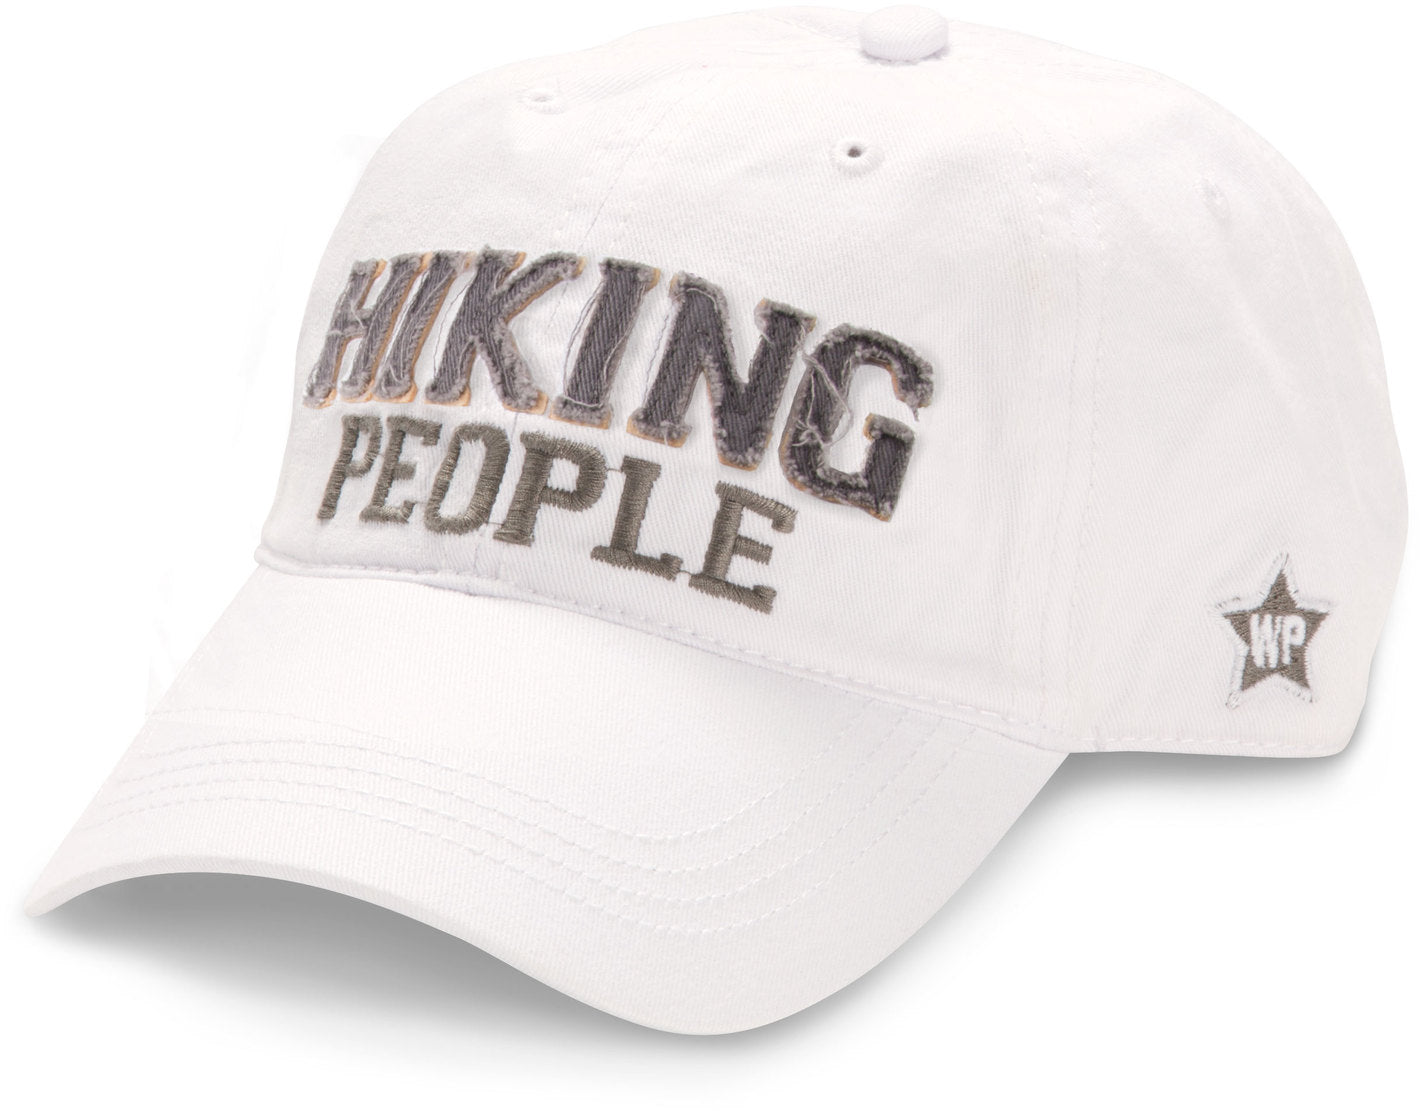 Hiking People Adjustable Hat